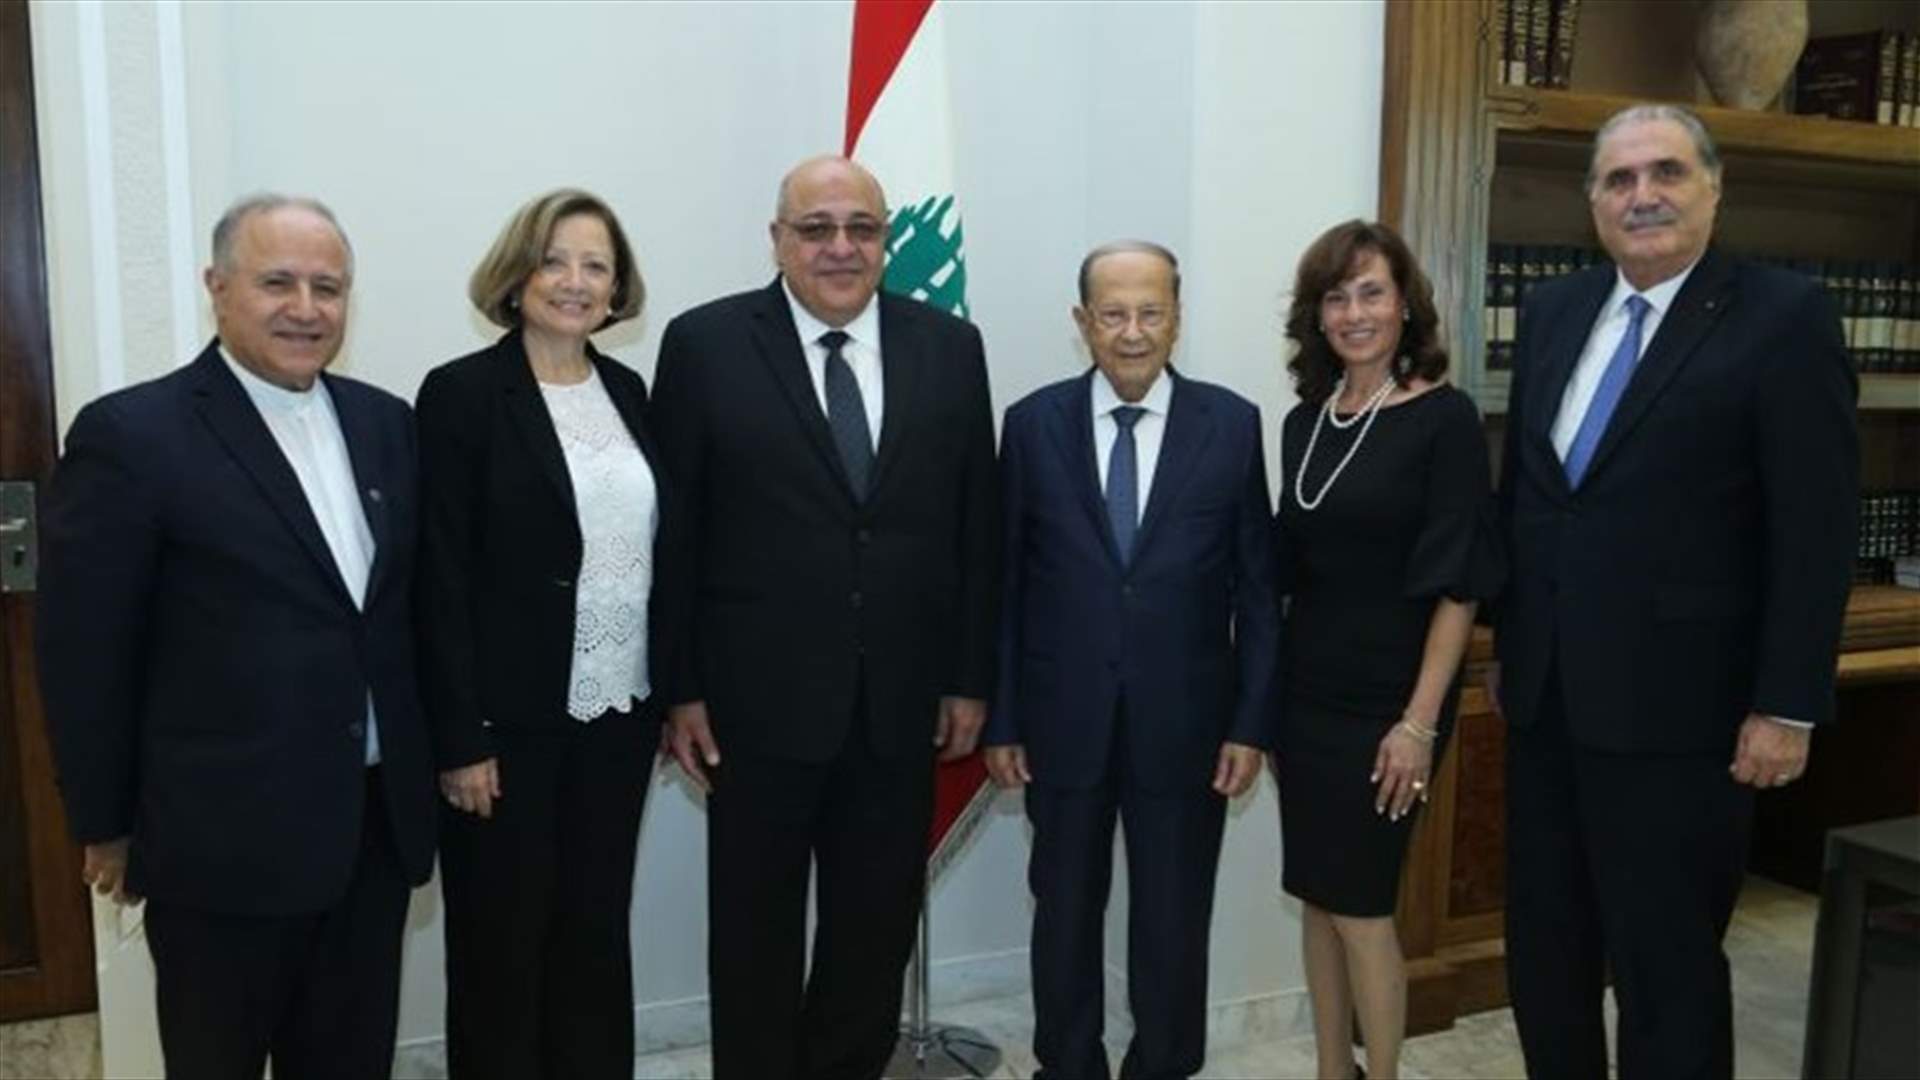 الرئيس عون الى نيويورك الاحد المقبل لترؤس وفد لبنان الى الامم المتحدة